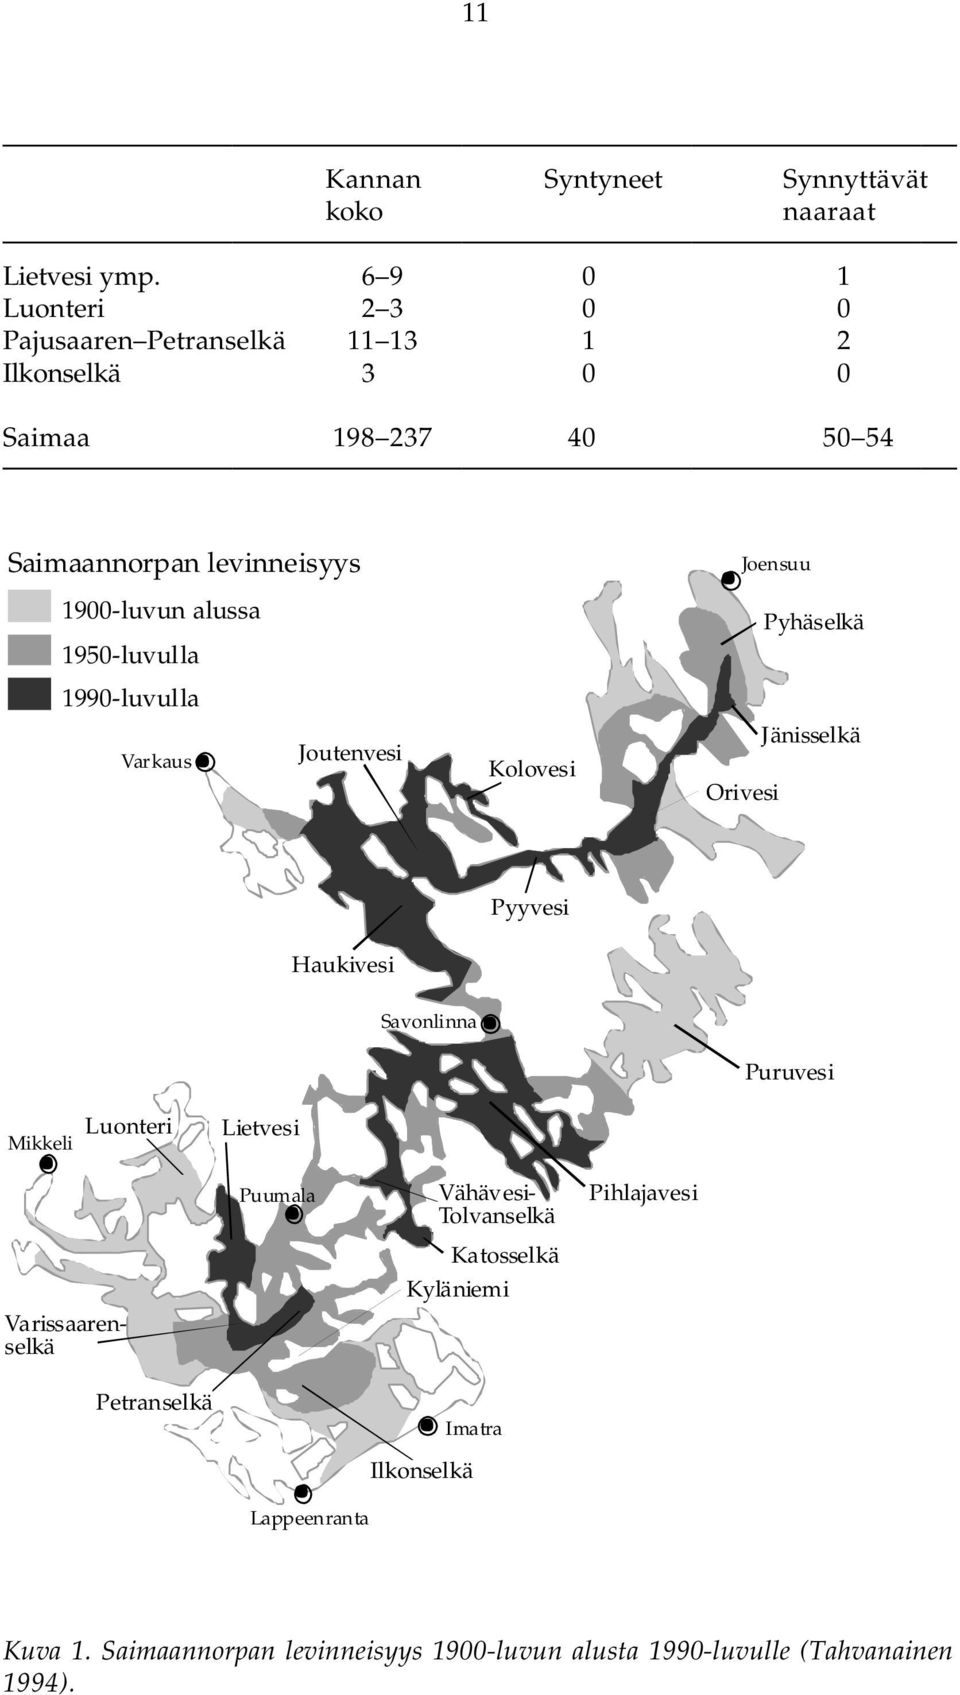 1900-luvun alussa 1950-luvulla Pyhäselkä 1990-luvulla Varkaus Joutenvesi Kolovesi Orivesi Jänisselkä Pyyvesi Haukivesi Savonlinna Puruvesi